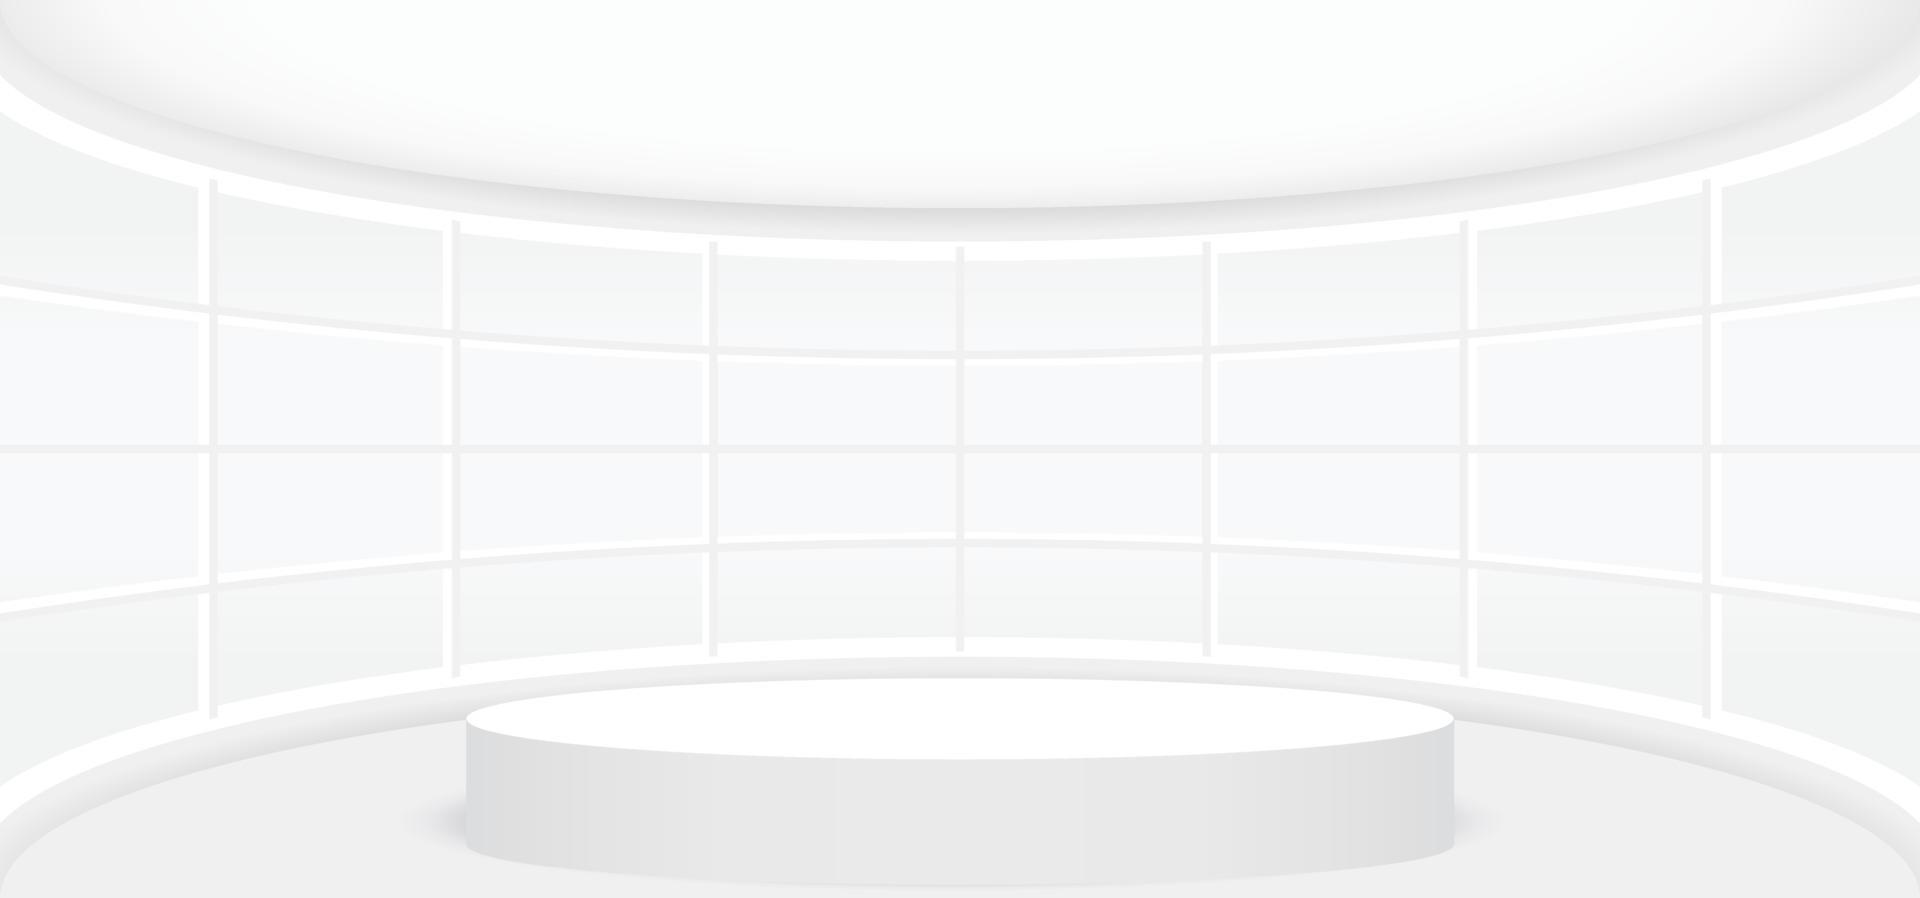 habitación blanca vacía con escenario redondo blanco o podio para exhibición, presentación, maqueta, pedestal de escenario o producto de montaje. ilustración vectorial de plantilla interior 3d abstracta para el fondo. vector